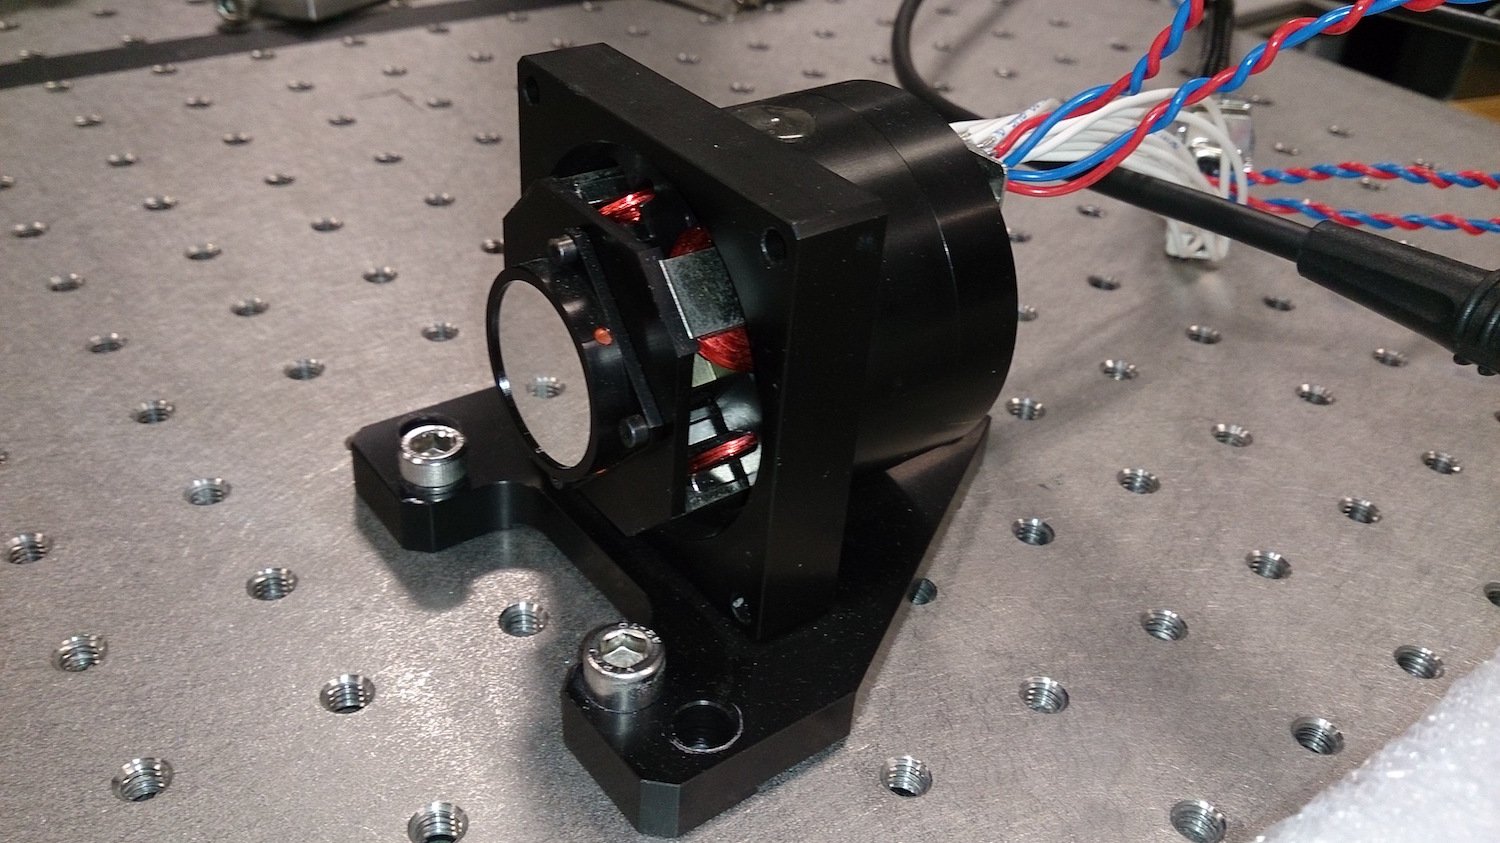 Kippspiegel-System zur Manipulation von Laserstrahlen